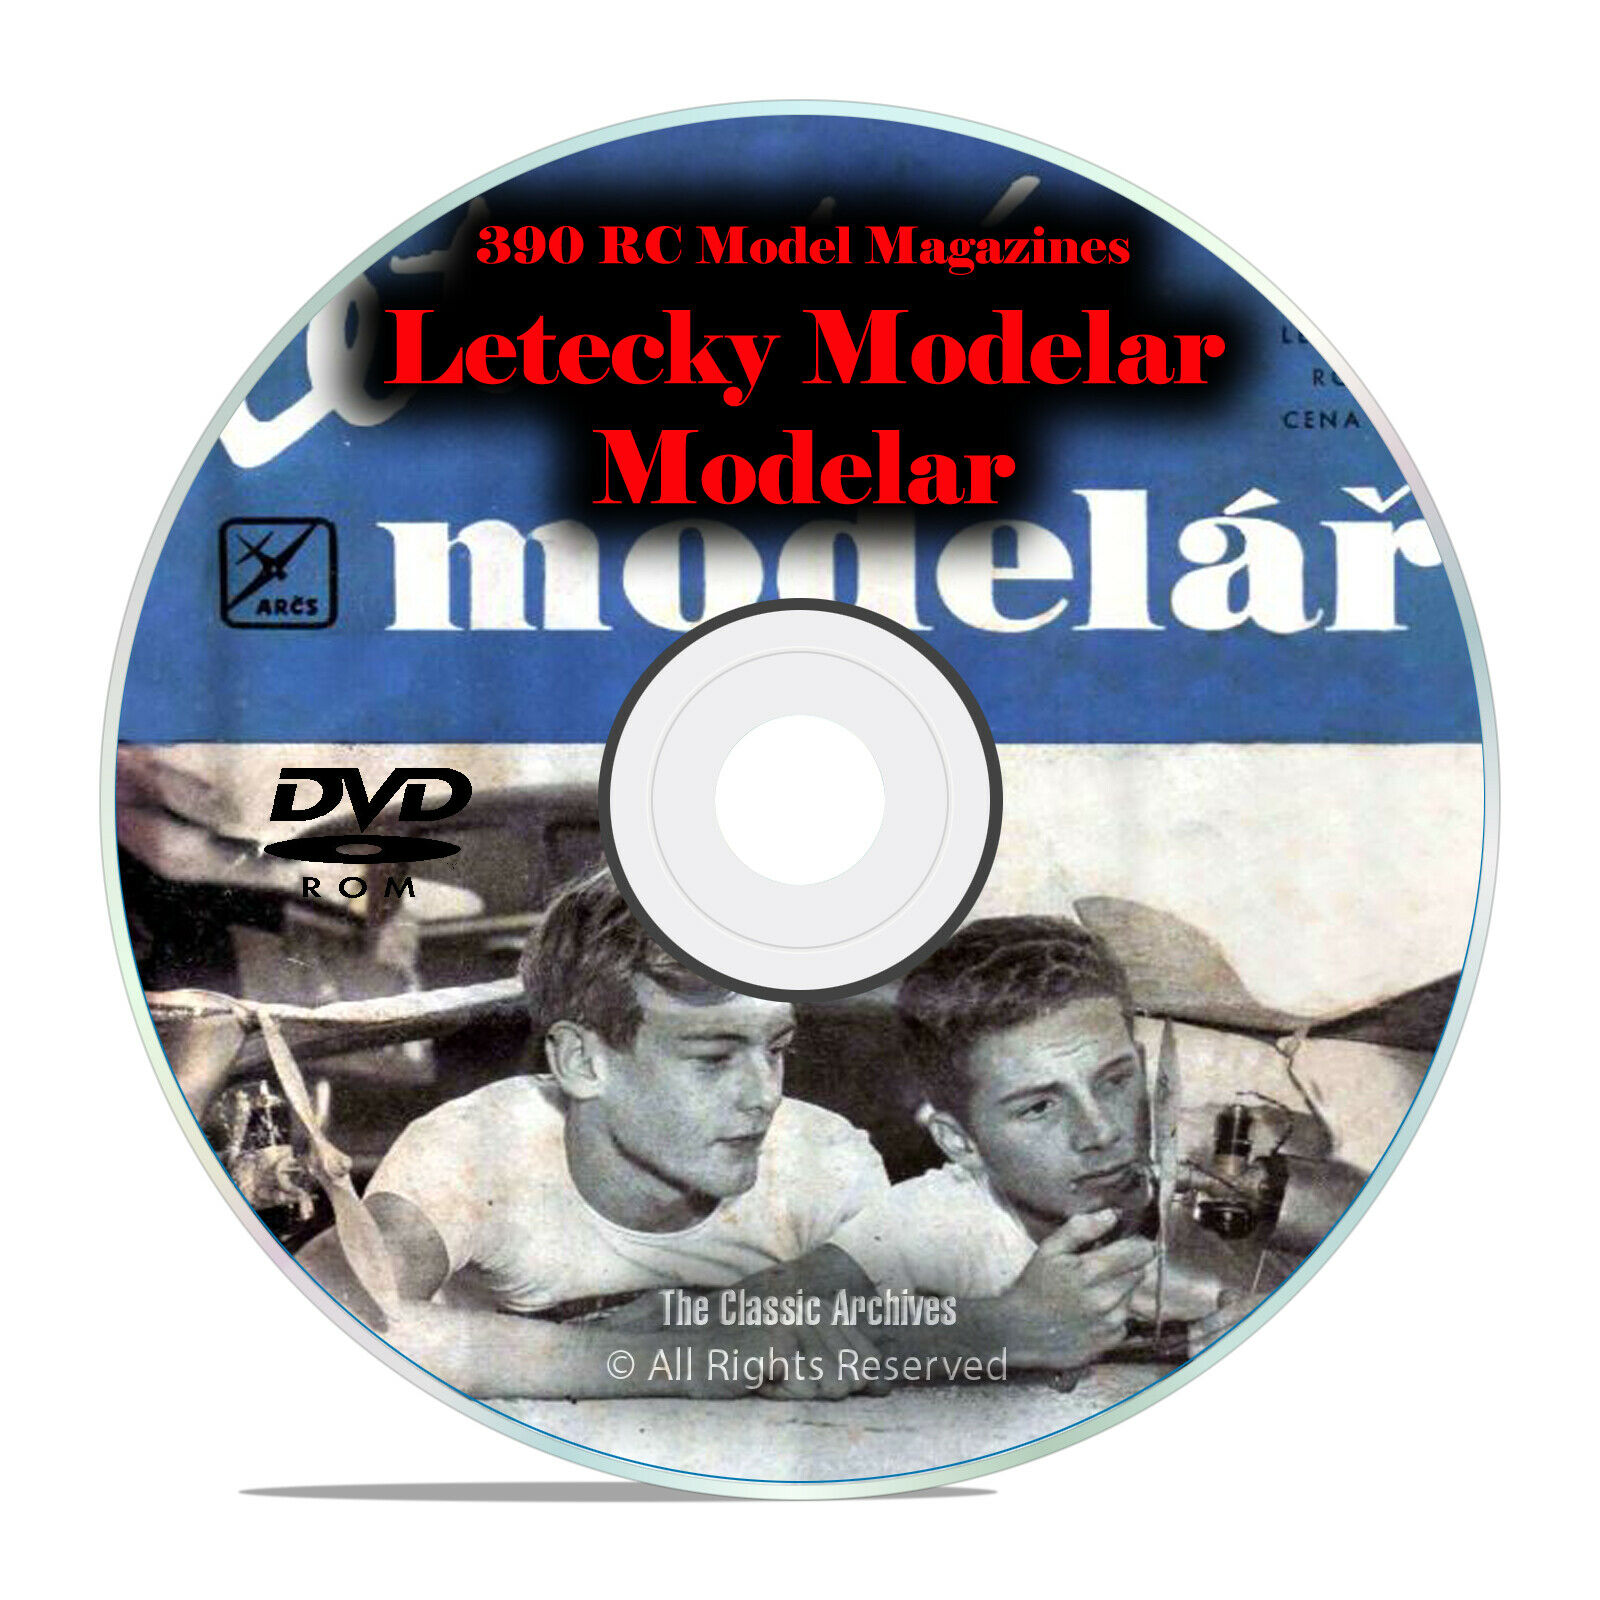 390 RC Model Airplane Magazines, Modelar, Letecky Modelar (Czech) DVD I14